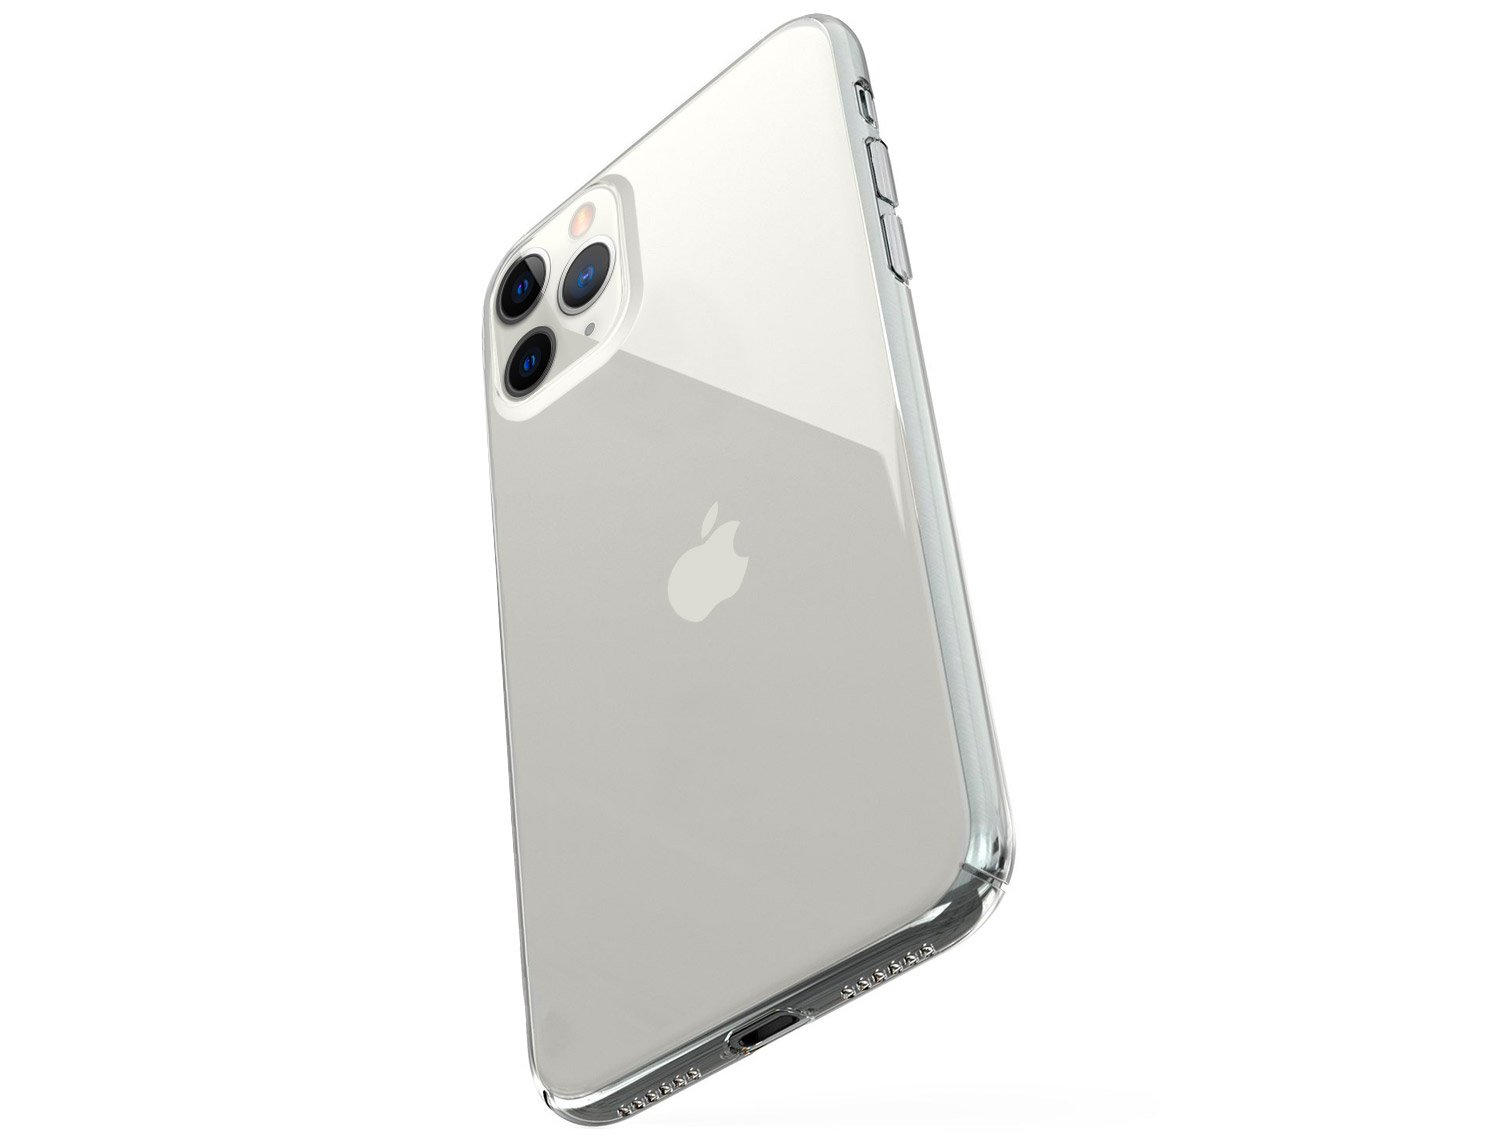 Coque fine iPhone 11, 11 Pro et 11 Pro Max, rigide, transparente